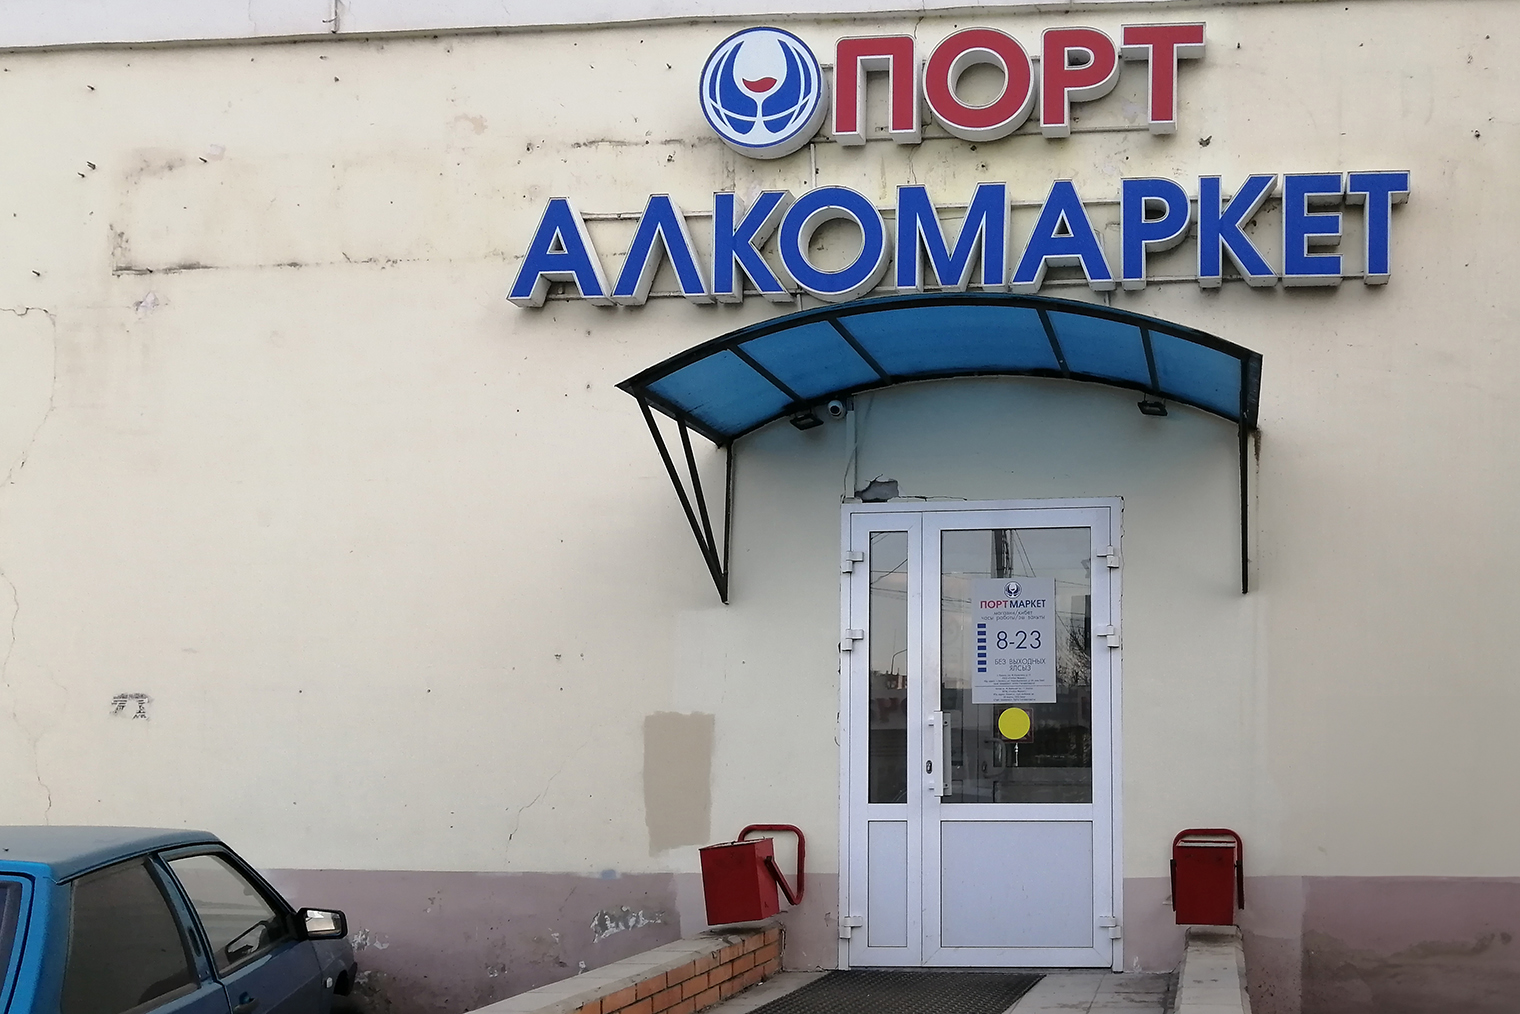 Магазин местной сети. Таких точек в Татарстане более 200